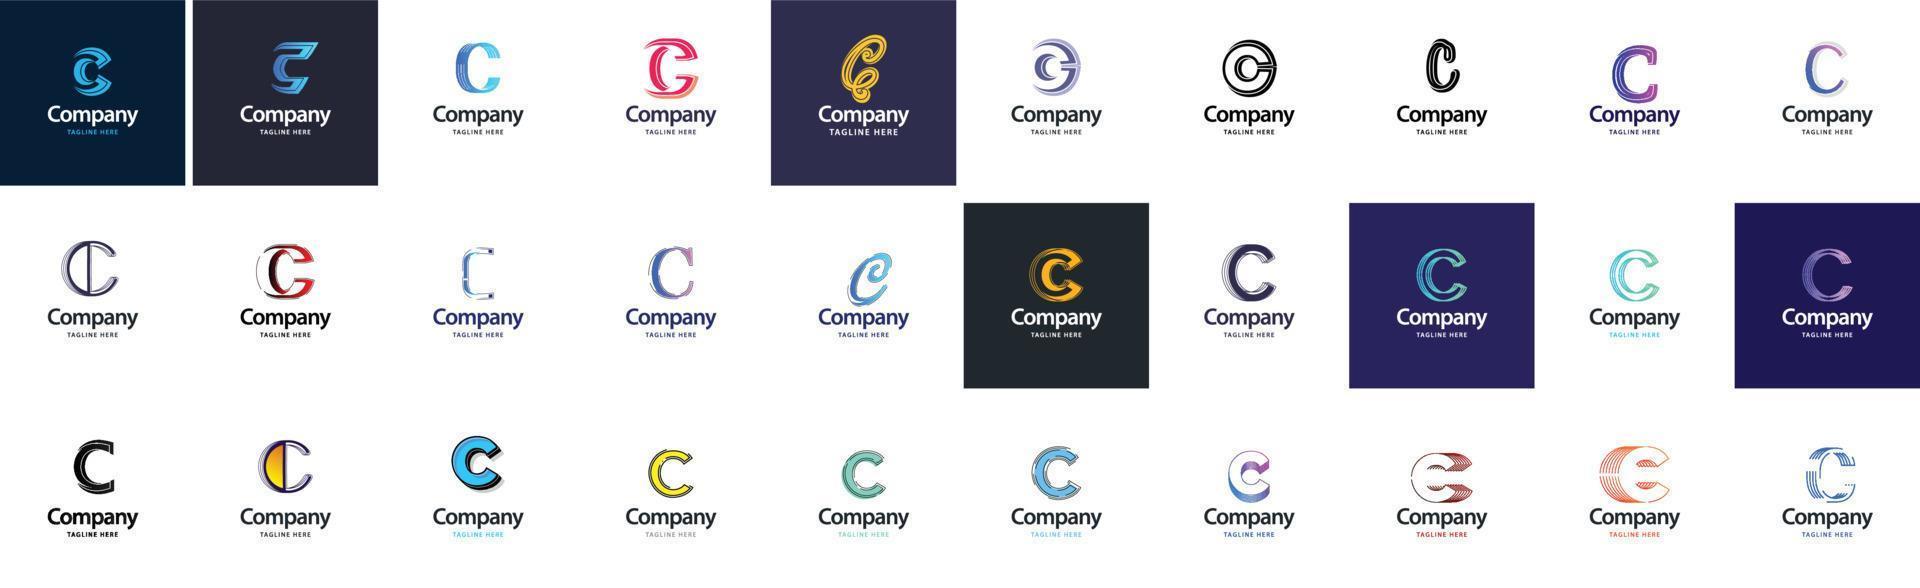 c-Logo-Sammlung. 30 Business-Logo-Sammlung für Finanzunternehmen oder Designagenturen. vektormarkenillustration vektor